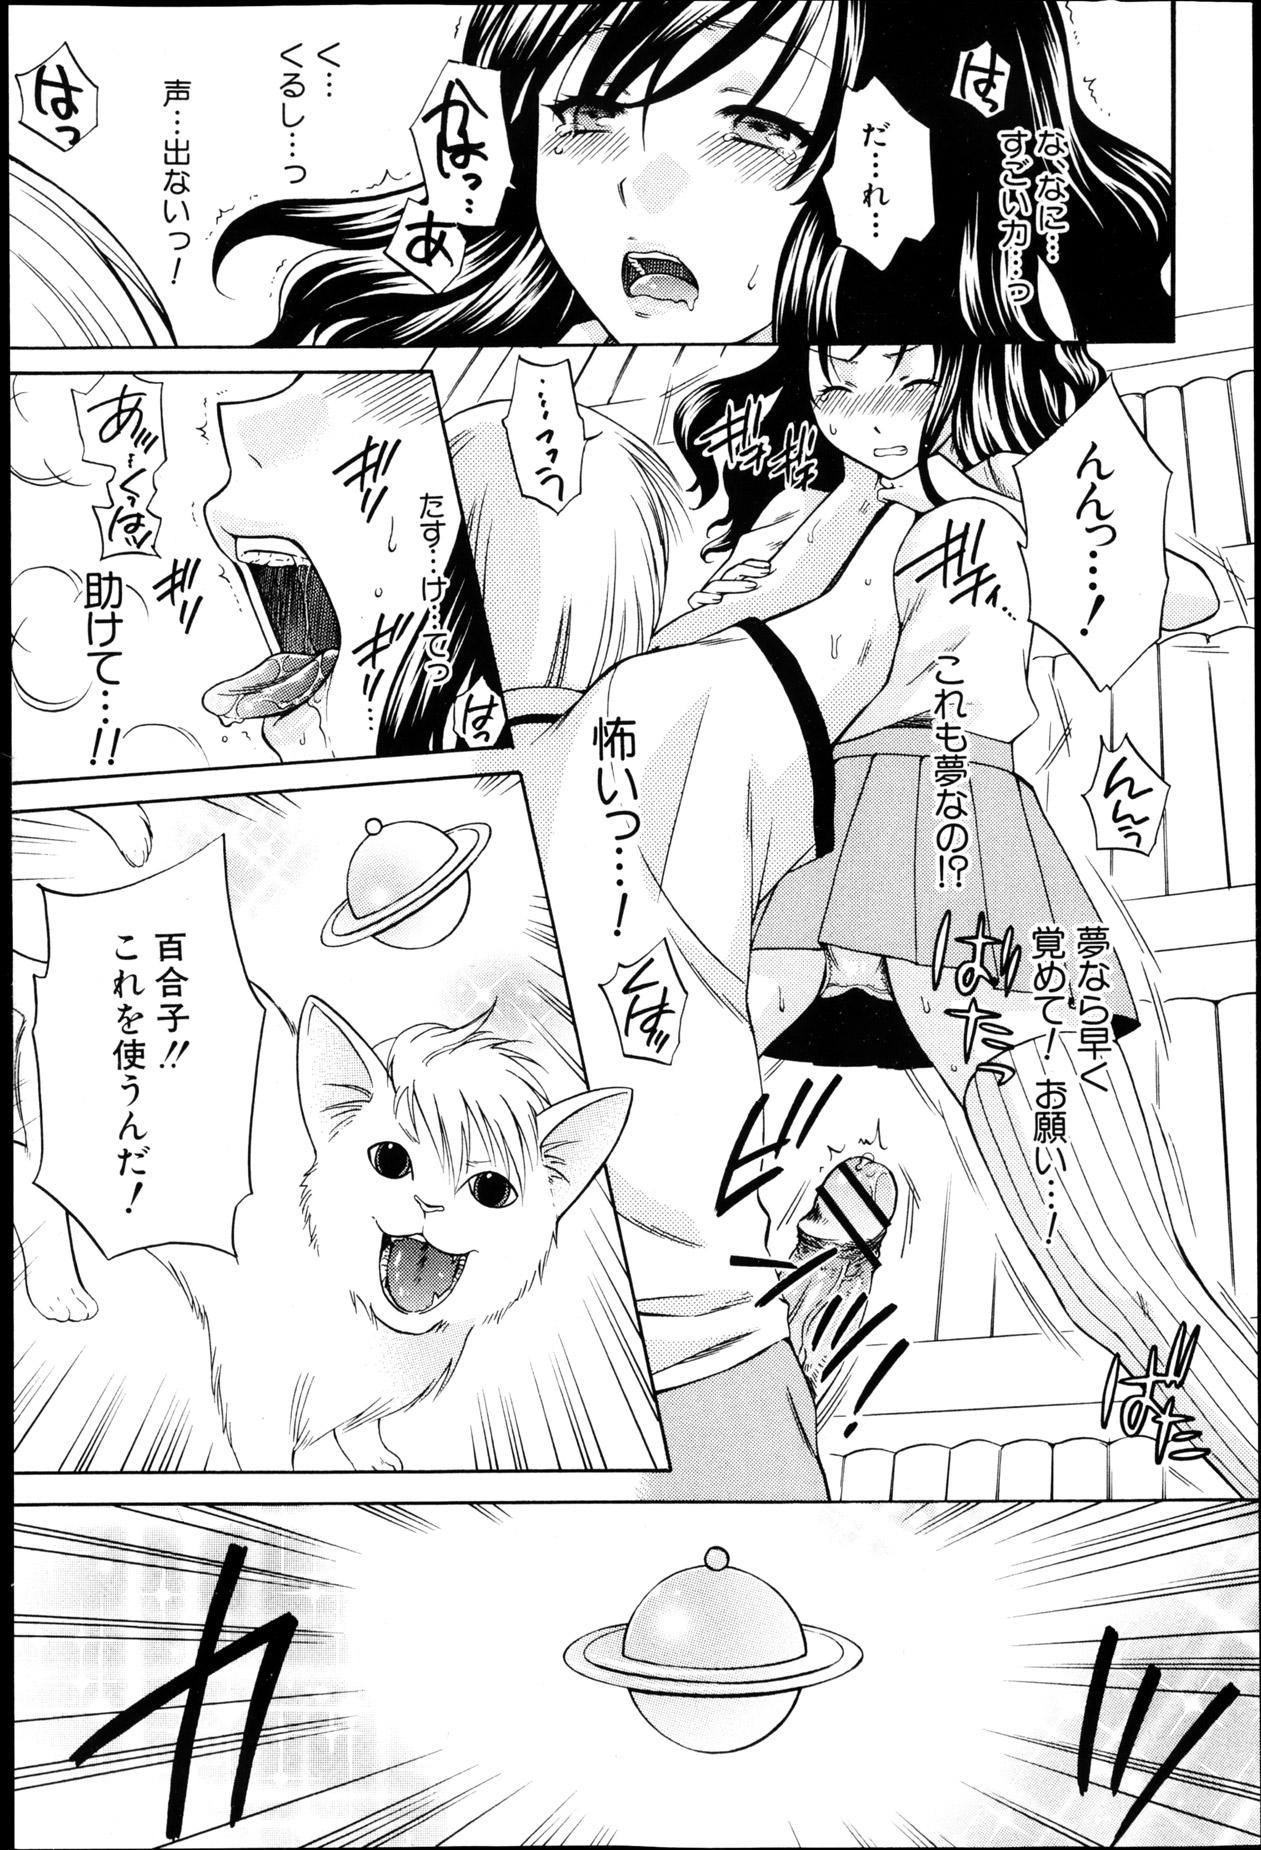 Whore Yoru ga Akenai. 19yo - Page 11